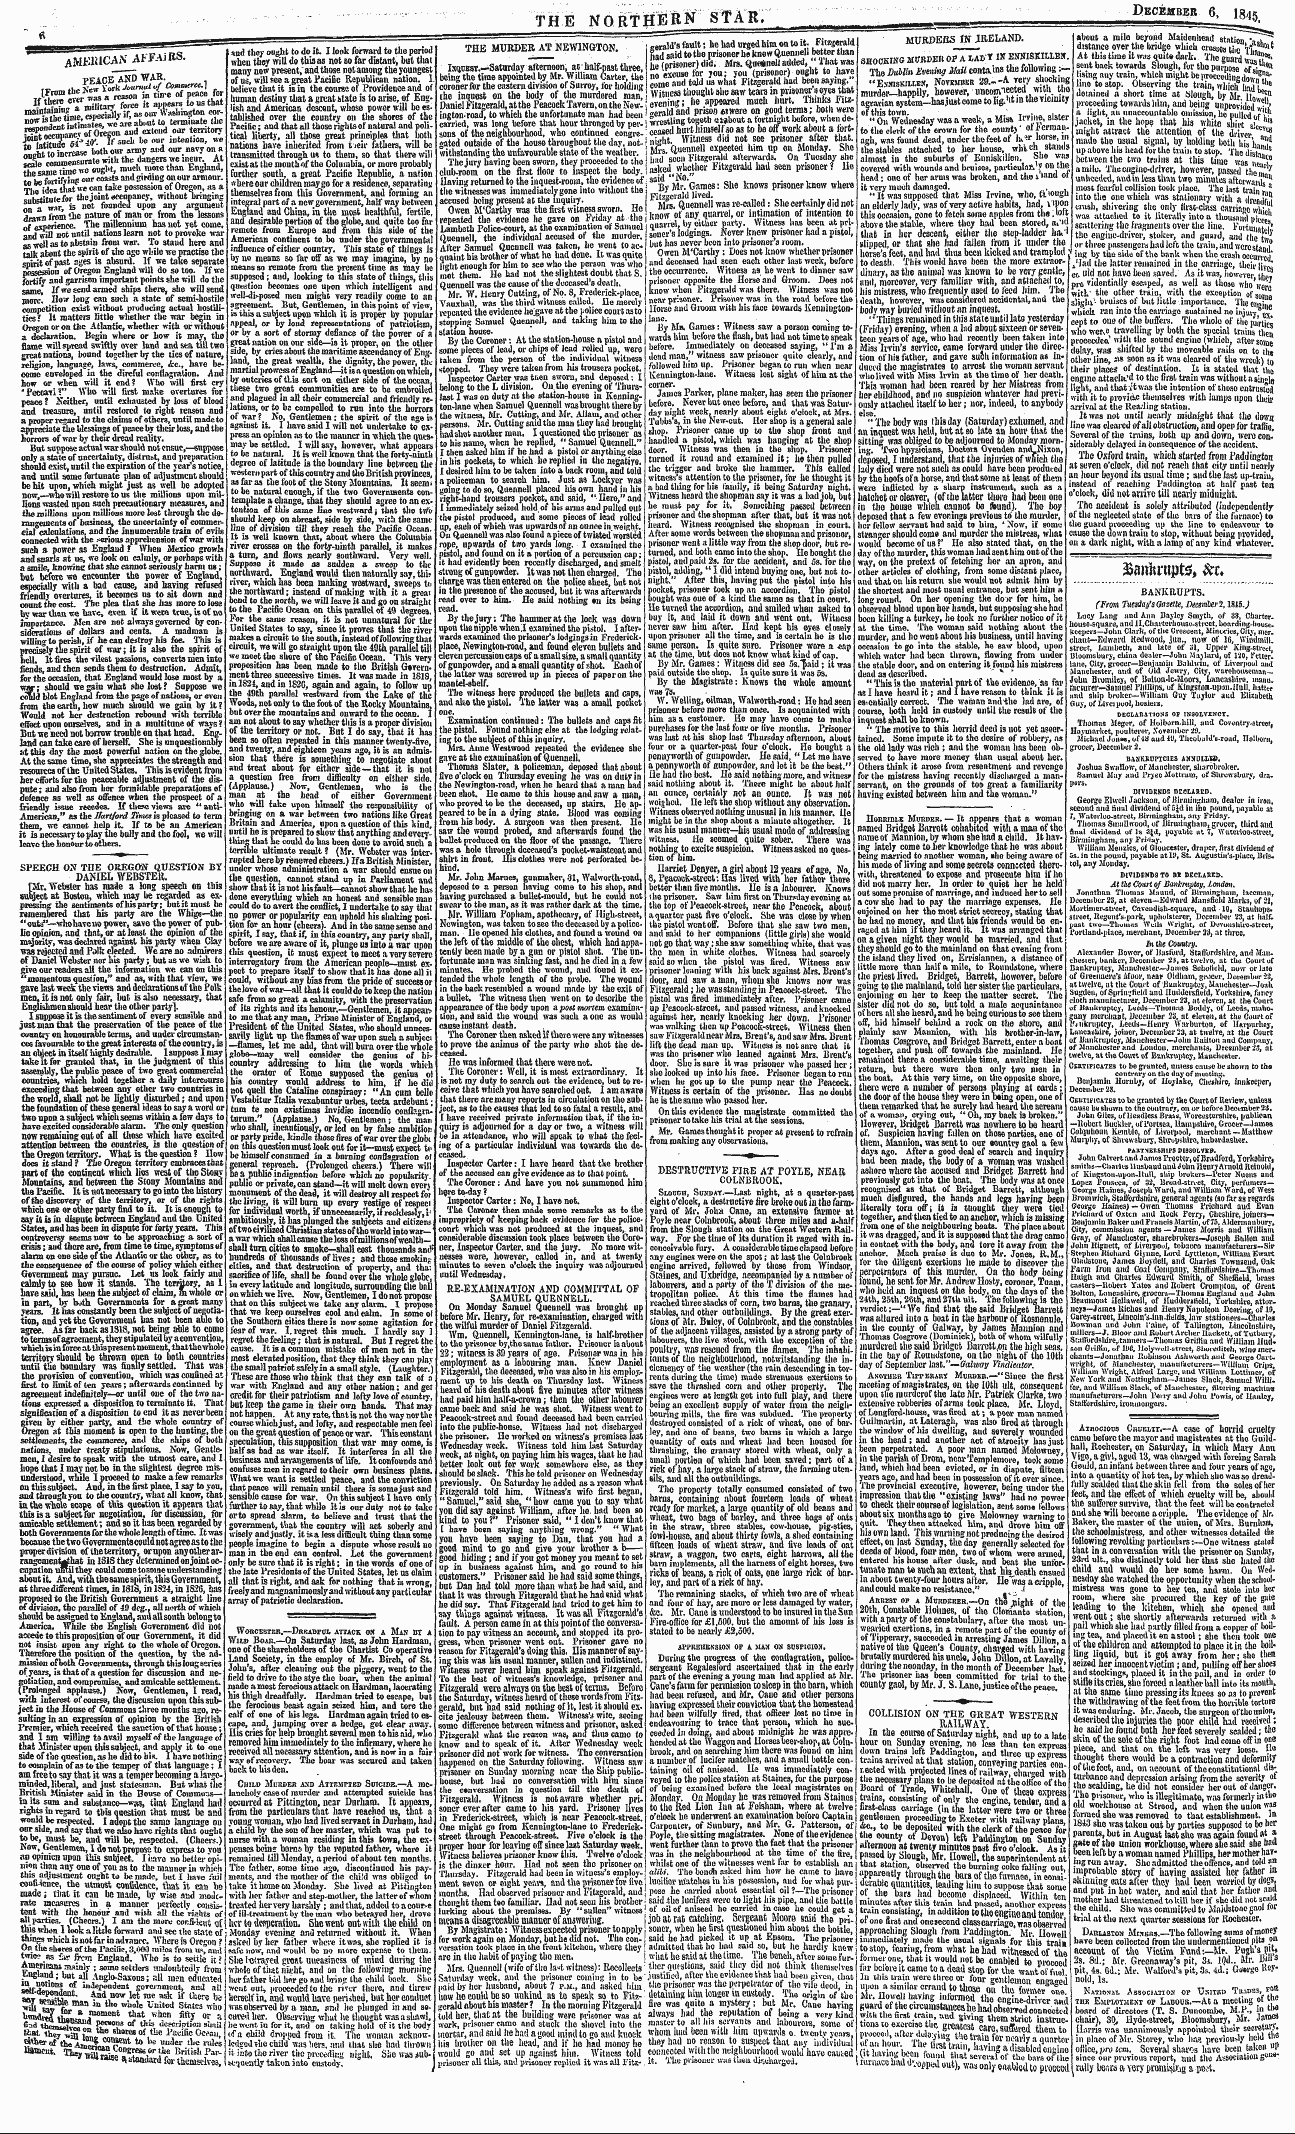 Northern Star (1837-1852): jS F Y, 3rd edition - Atattimtpte, ^R»